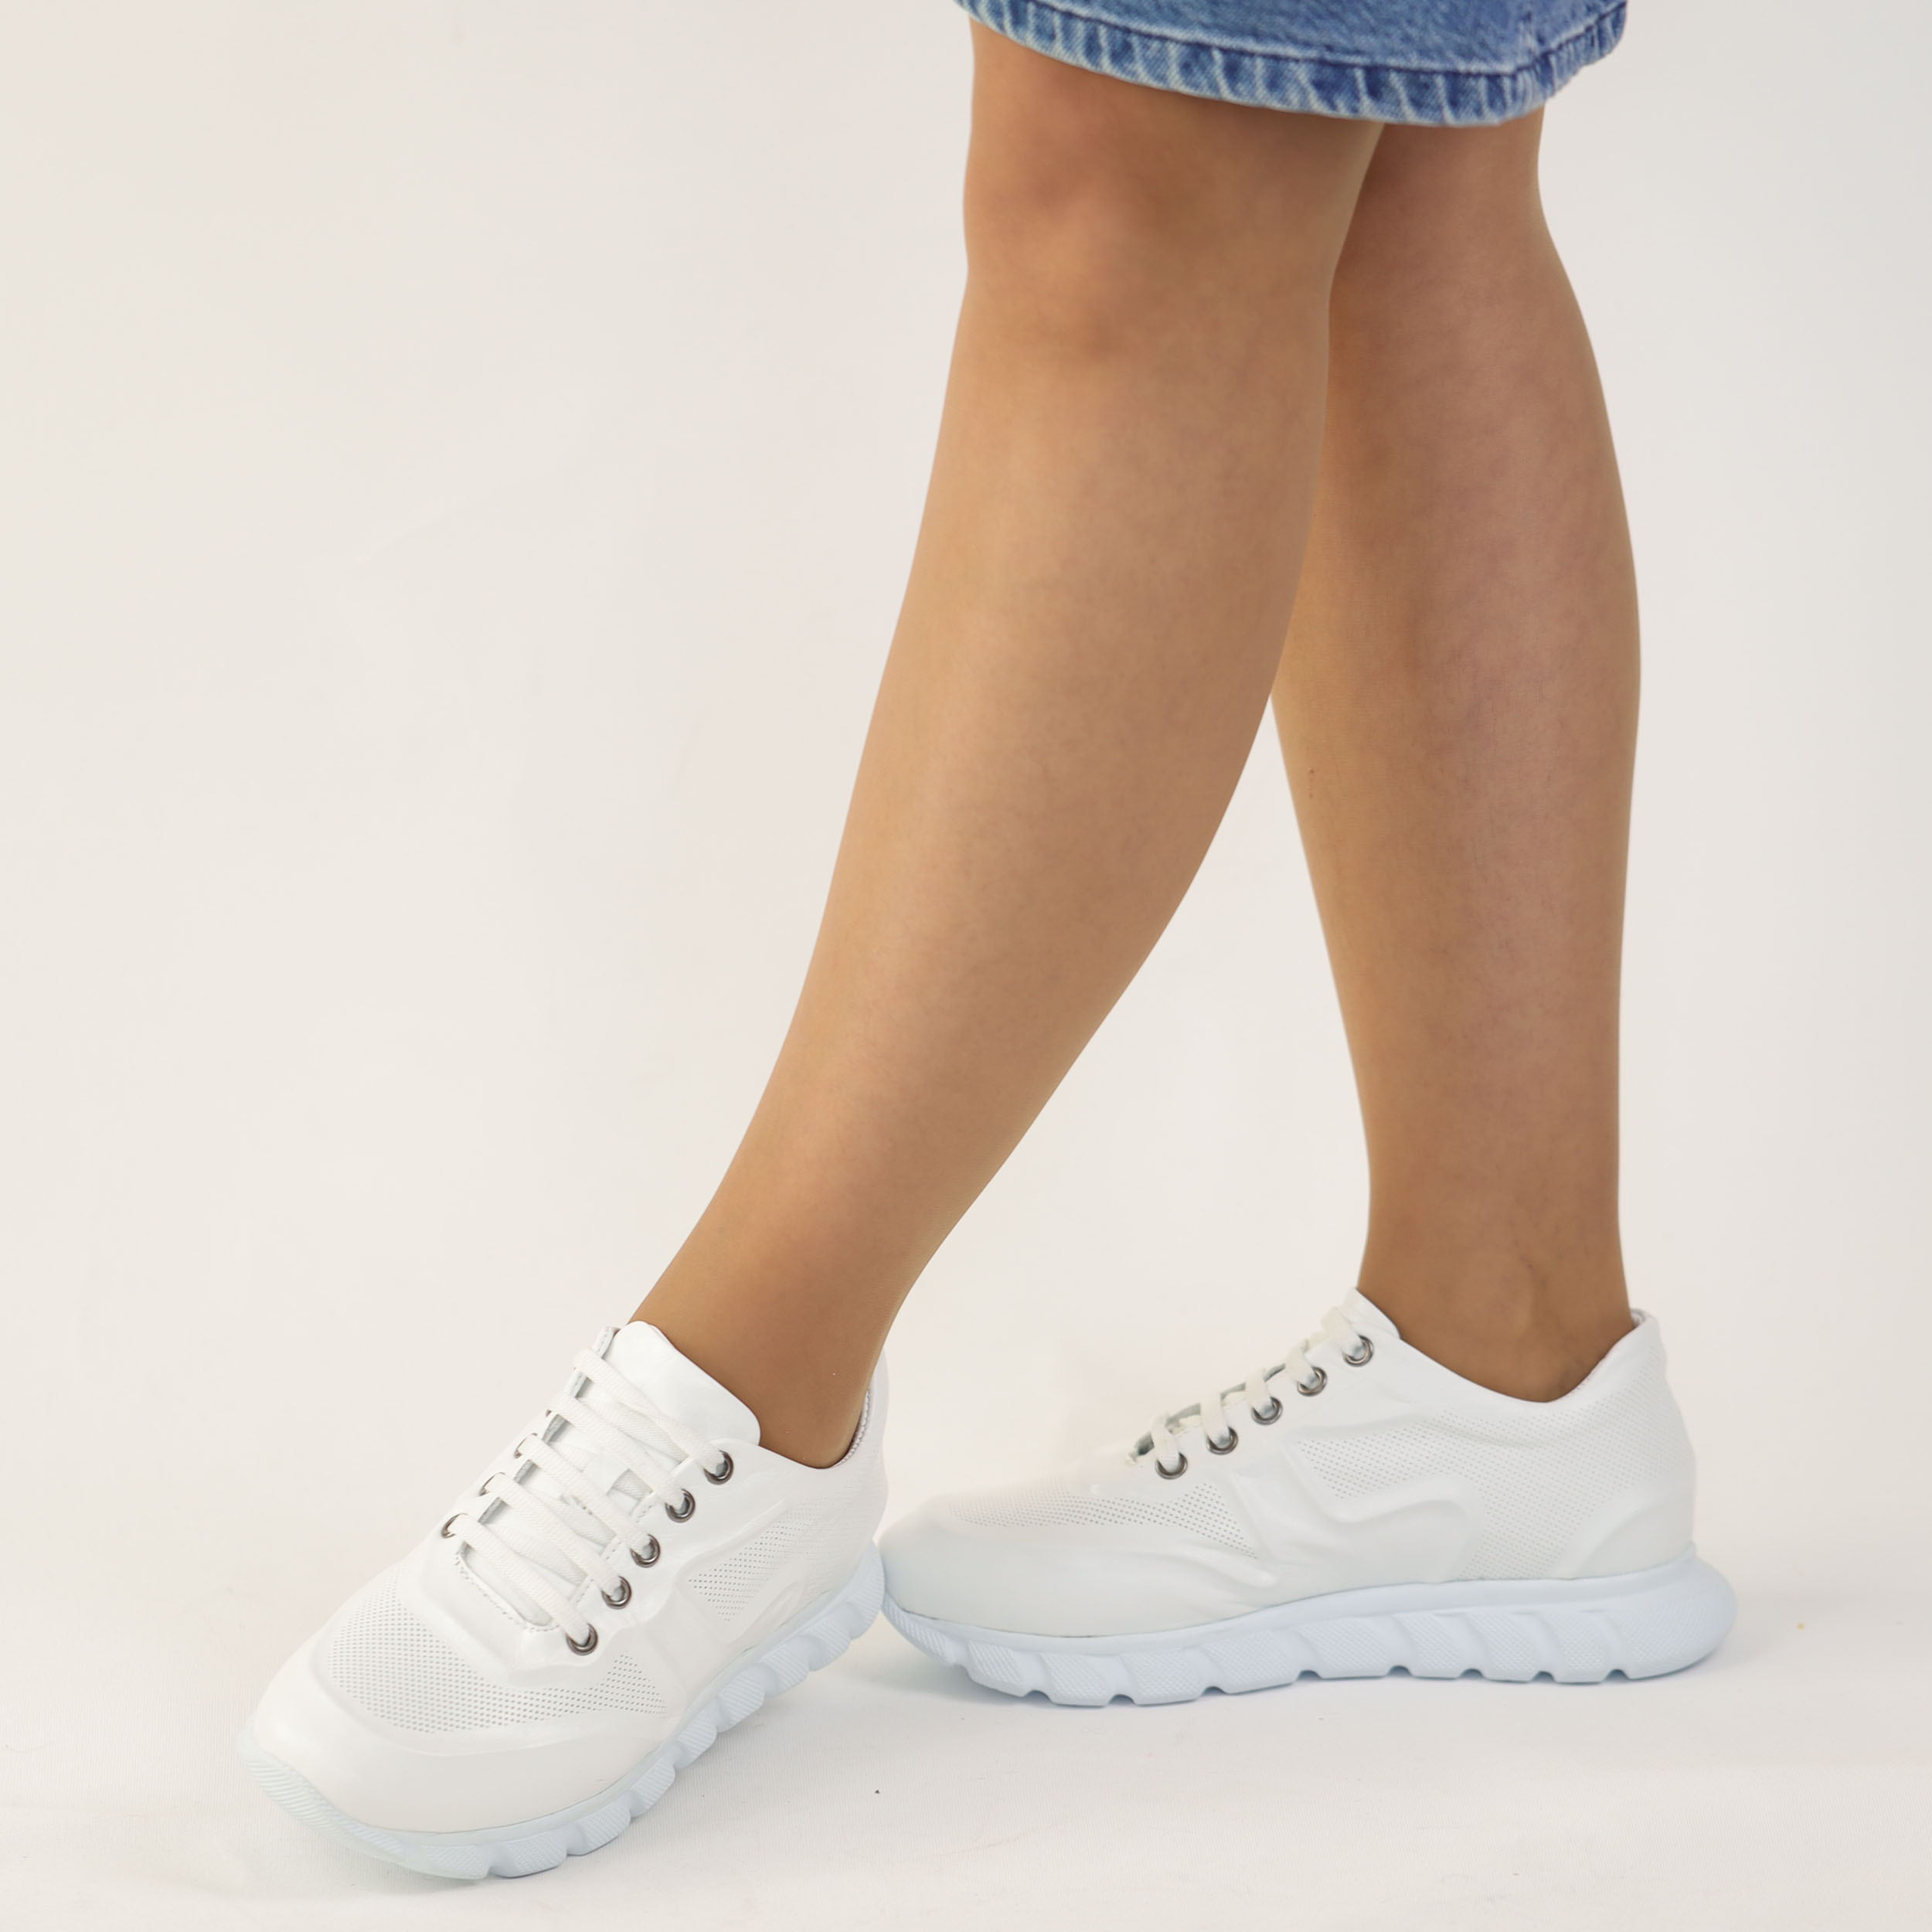 Kadın Hakiki Deri Günlük Yumuşak iç Tabanlı Spor Rahat Ayakkabı Sneakers, Renk: Beyaz, Beden: 36